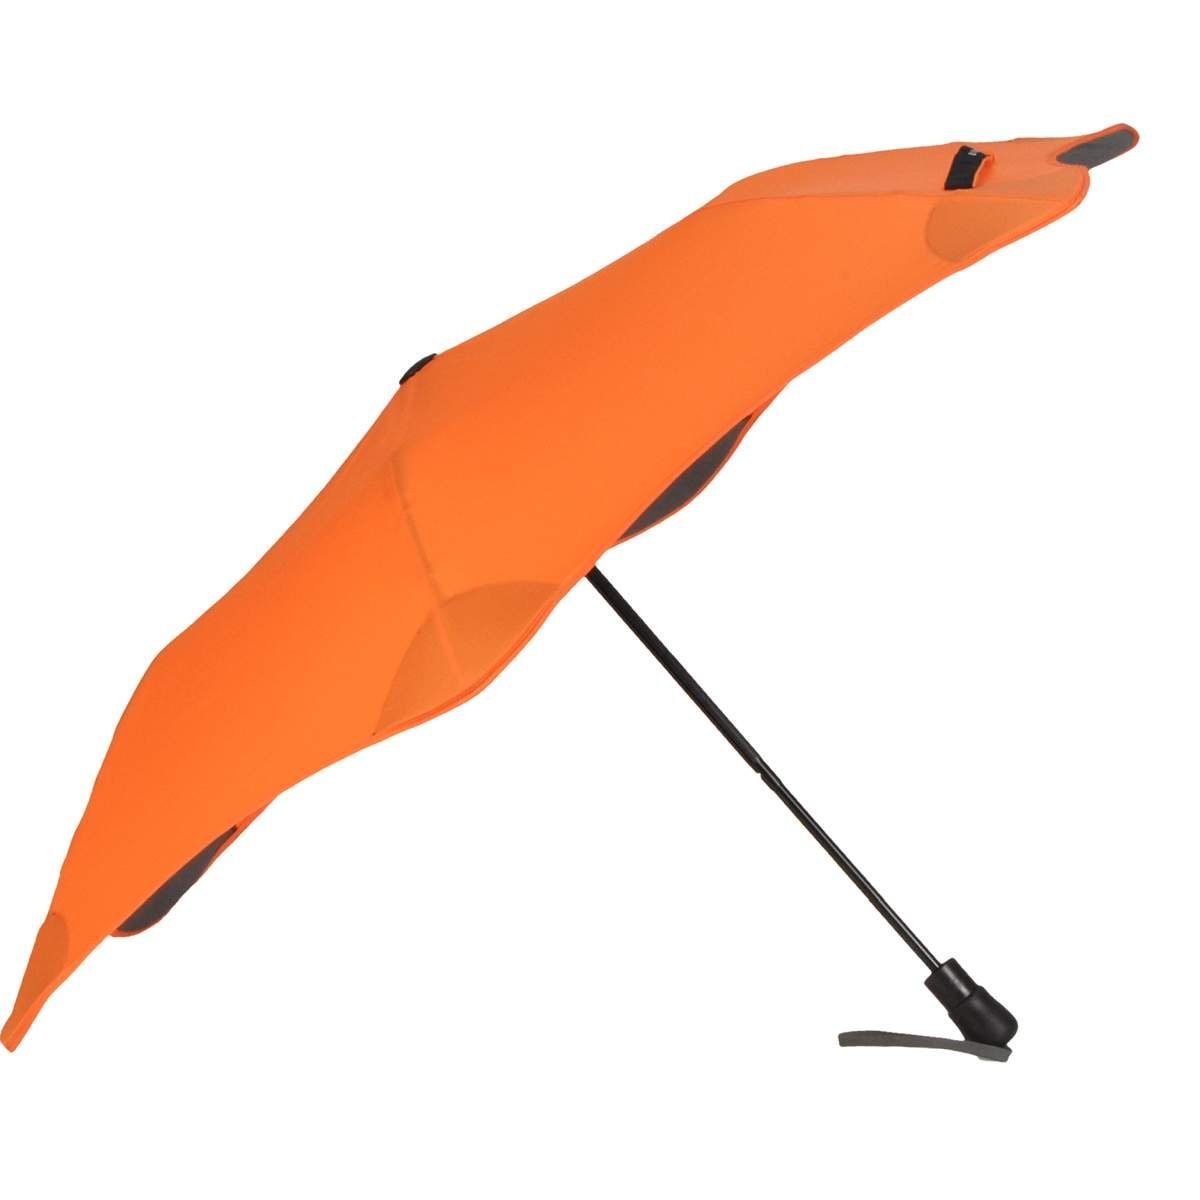 Taschenschirm, für Auto unterwegs, und Blunt Taschenregenschirm Regenschirm, Durchmesser 96cm orange Metro,